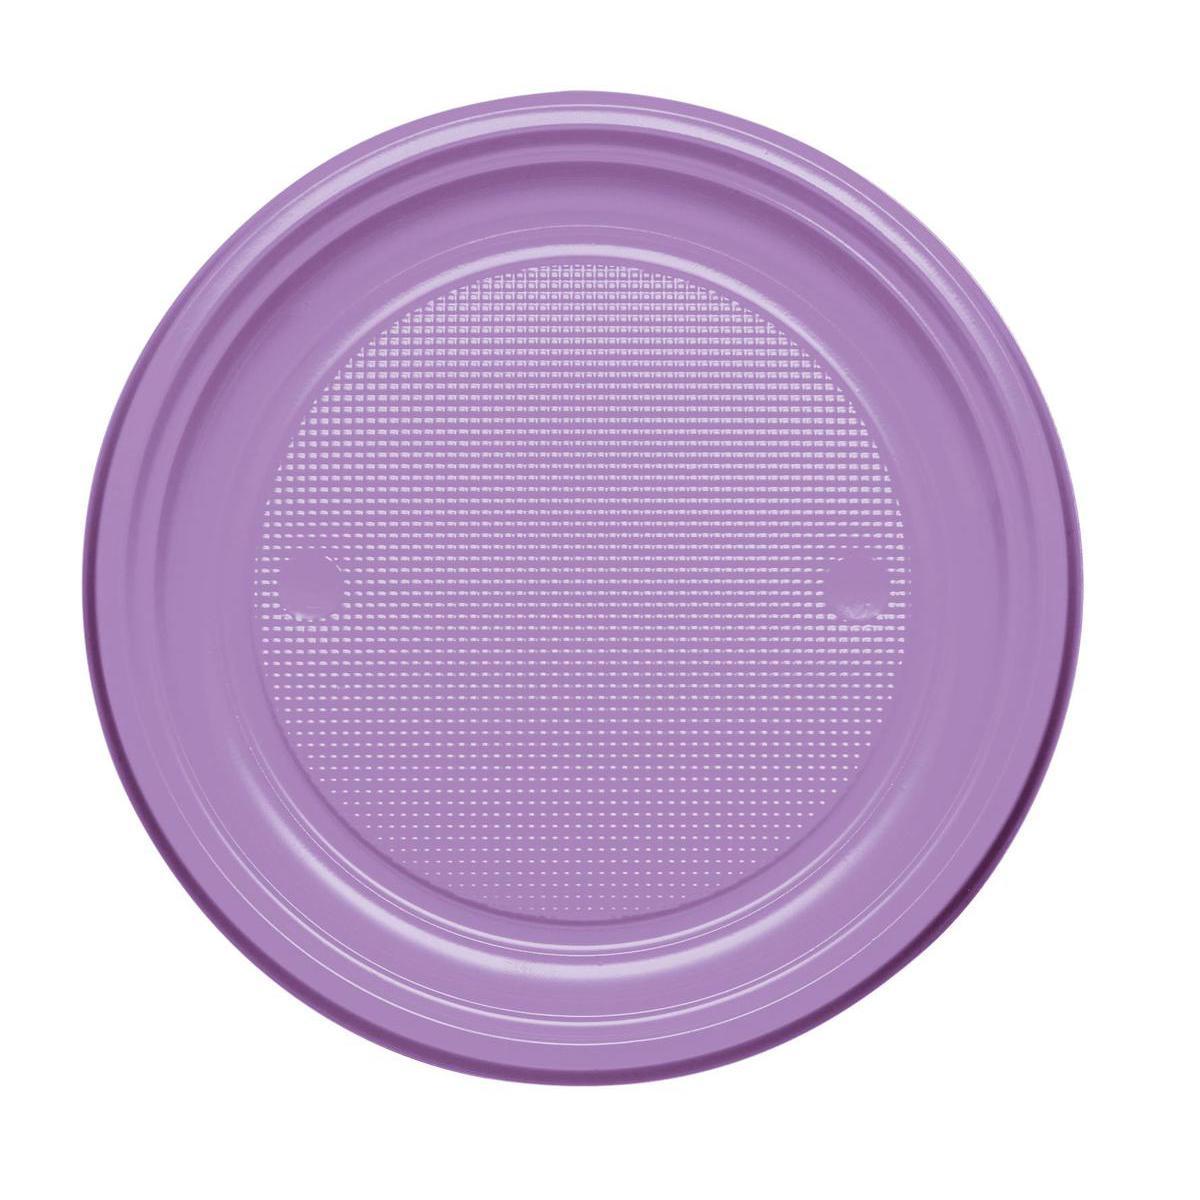 Lot de 20 assiettes en plastique - 22 cm -Polystyrène- Violet